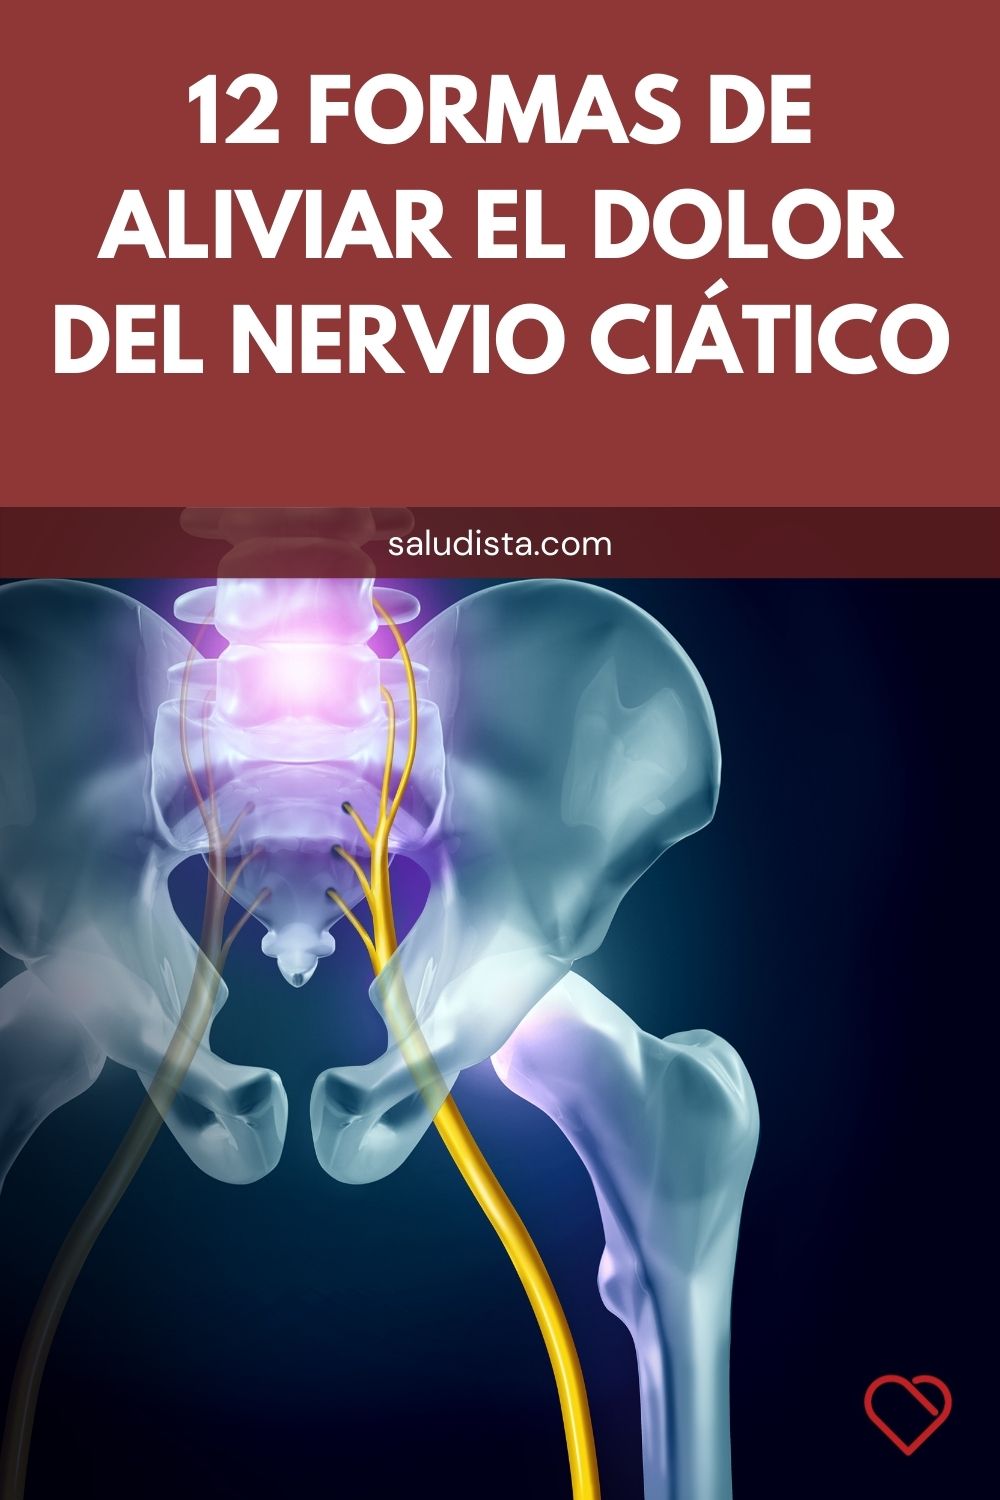 12 Formas de aliviar el dolor del nervio ciático